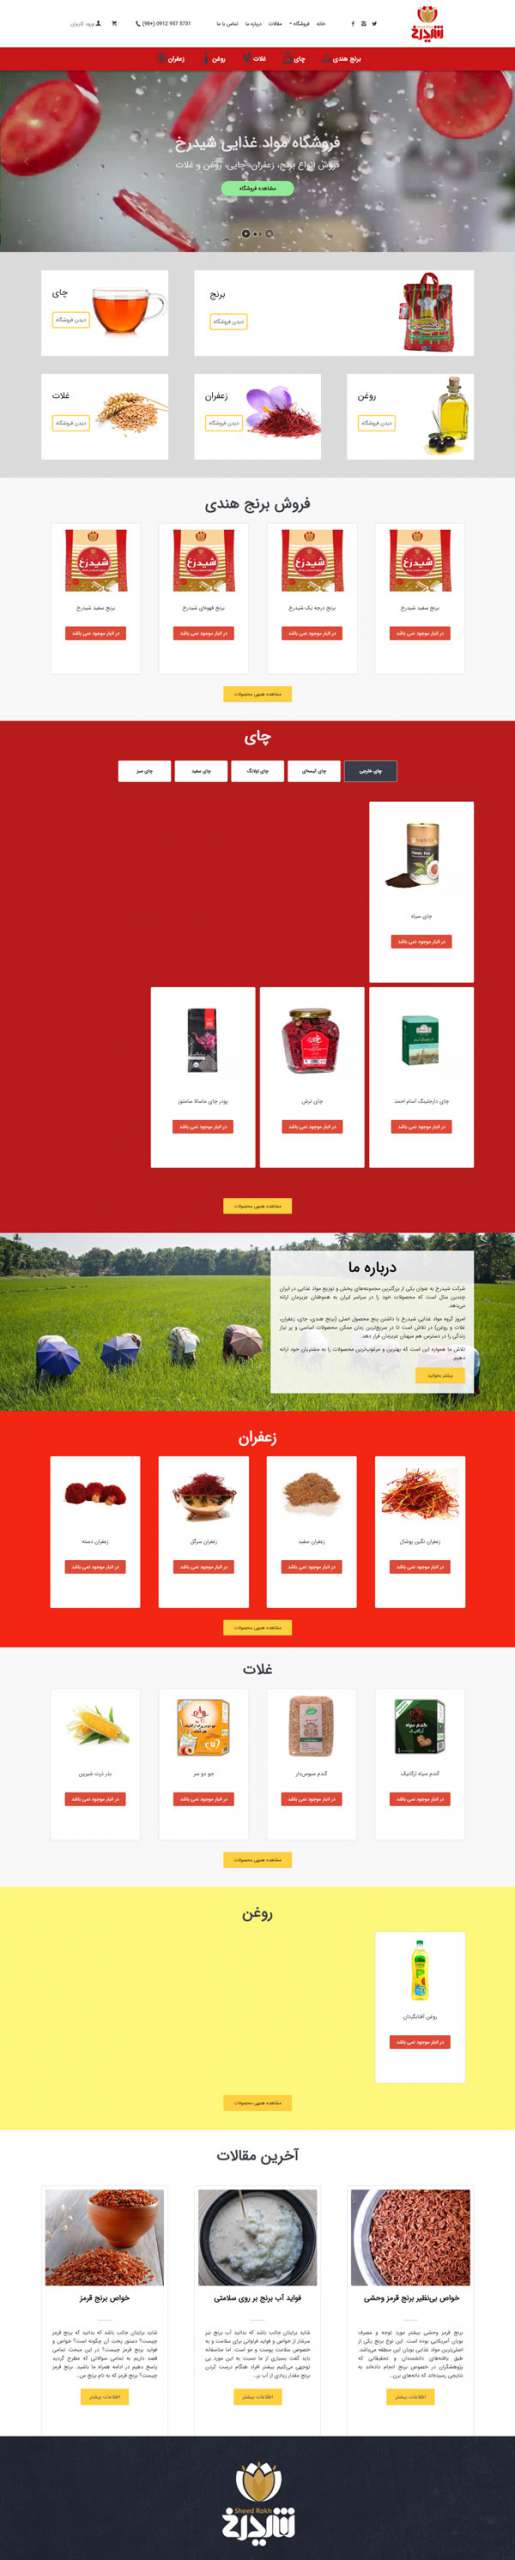 طراحی سایت شیدرخ | شرکت پخش مواد غذایی